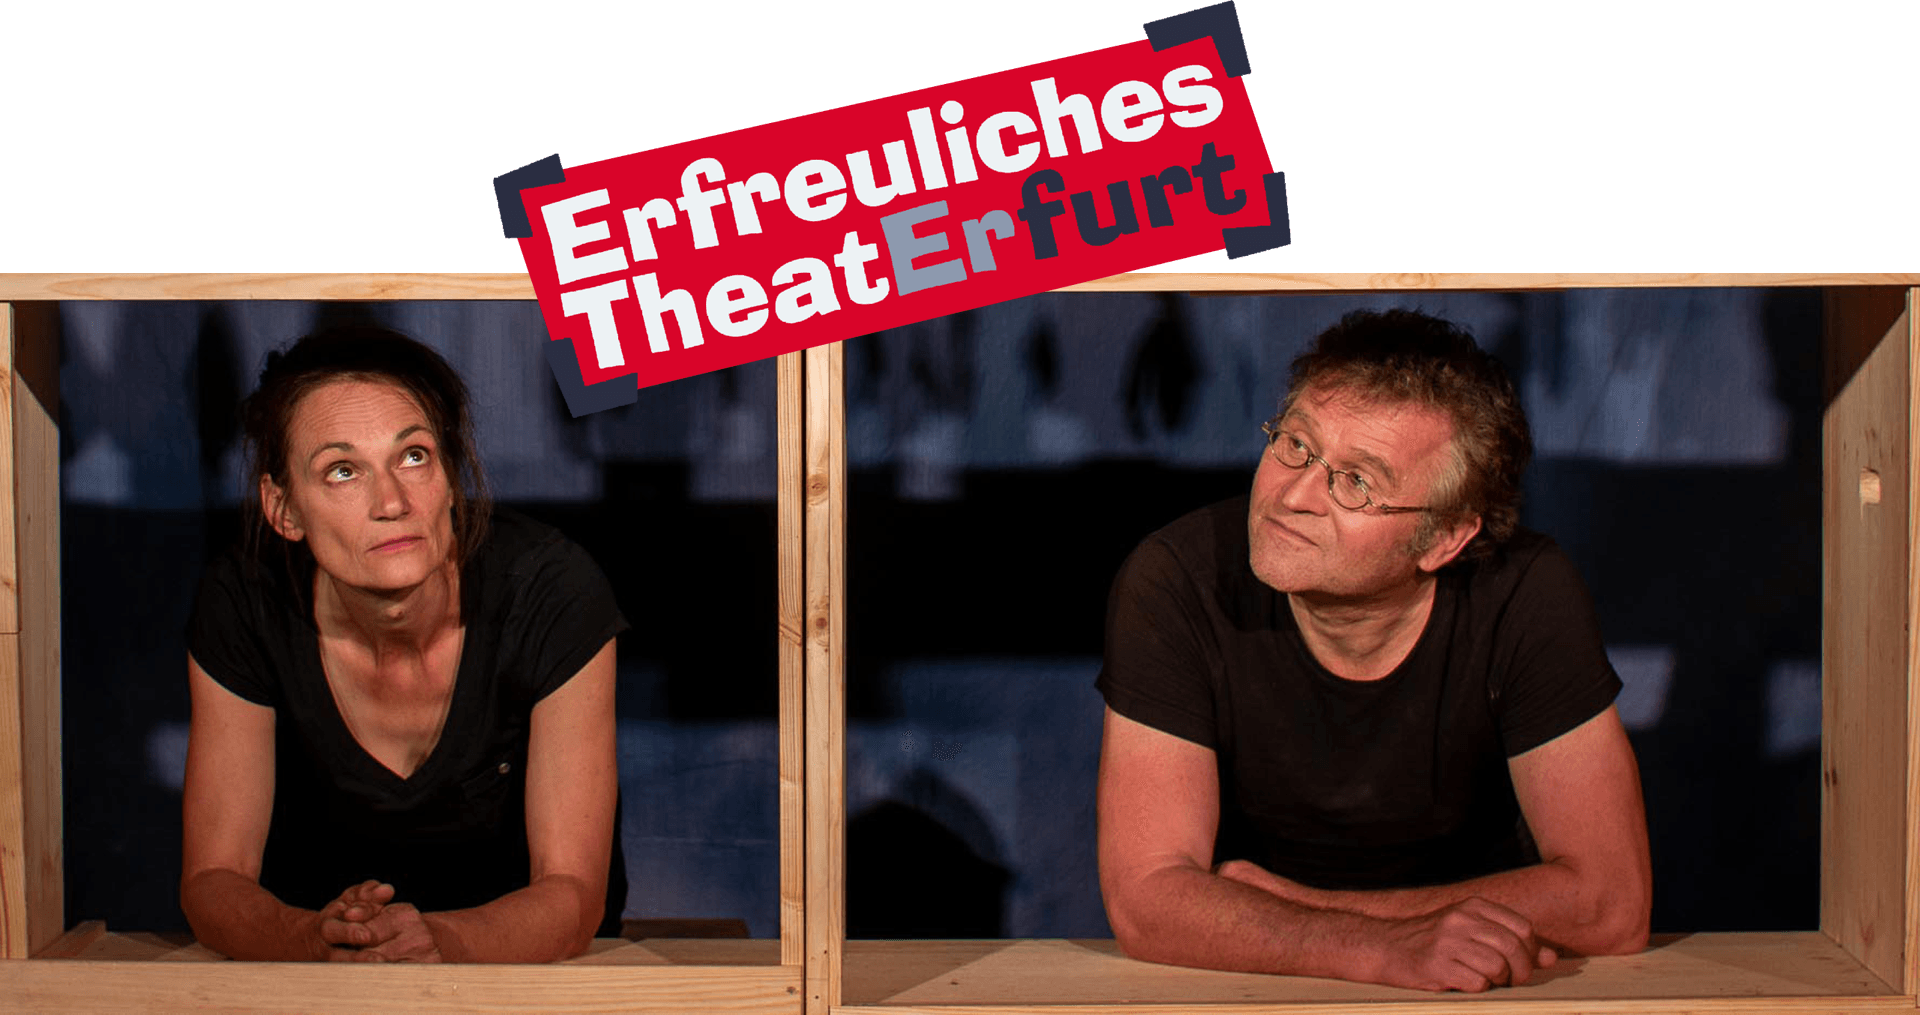 Katrin Heinke und Ronald Mernitz schauen durch hölzerne Rahmen auf das Logo des "Erfreuliches Theater Erfurt"